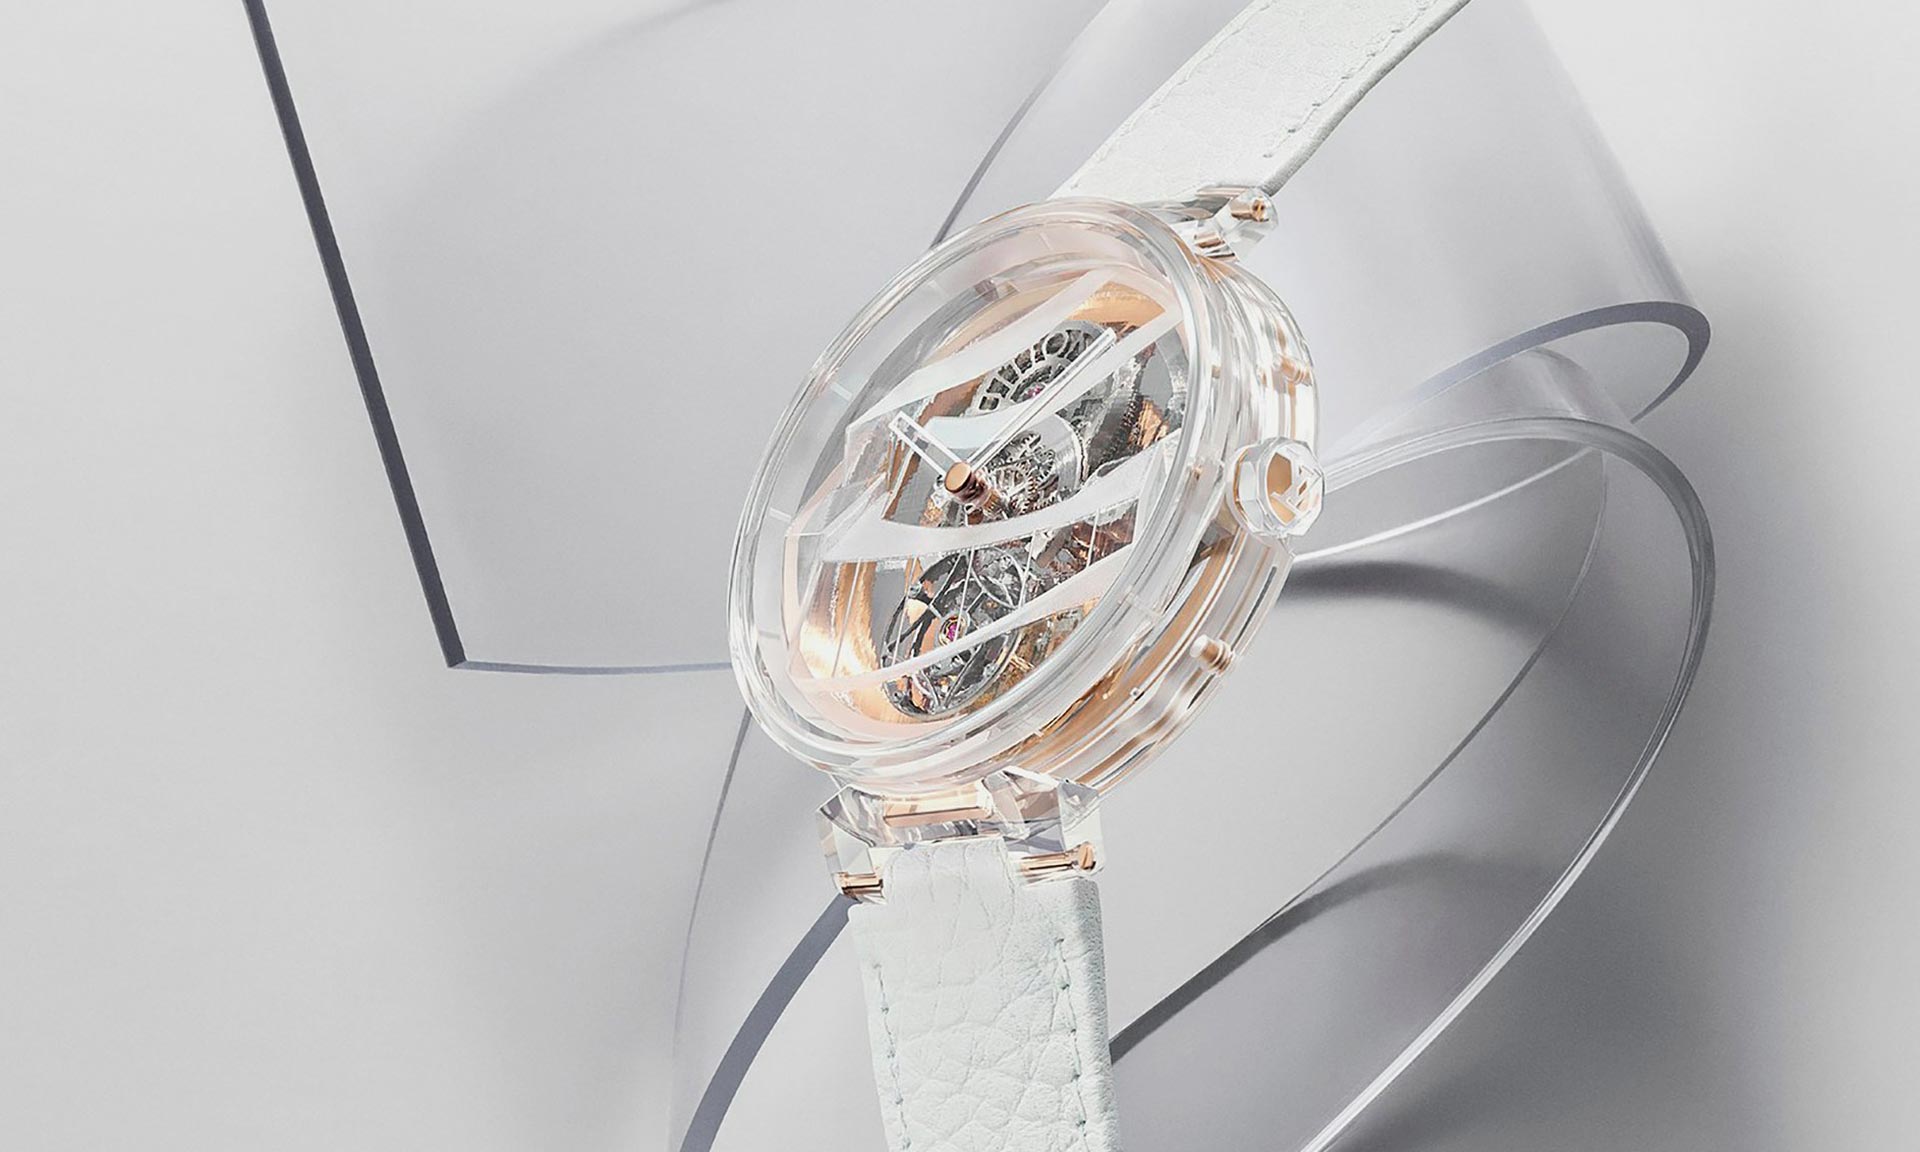 Frank Gehry navrhl v limitované edici transparentní hodinky pro Louis Vuitton